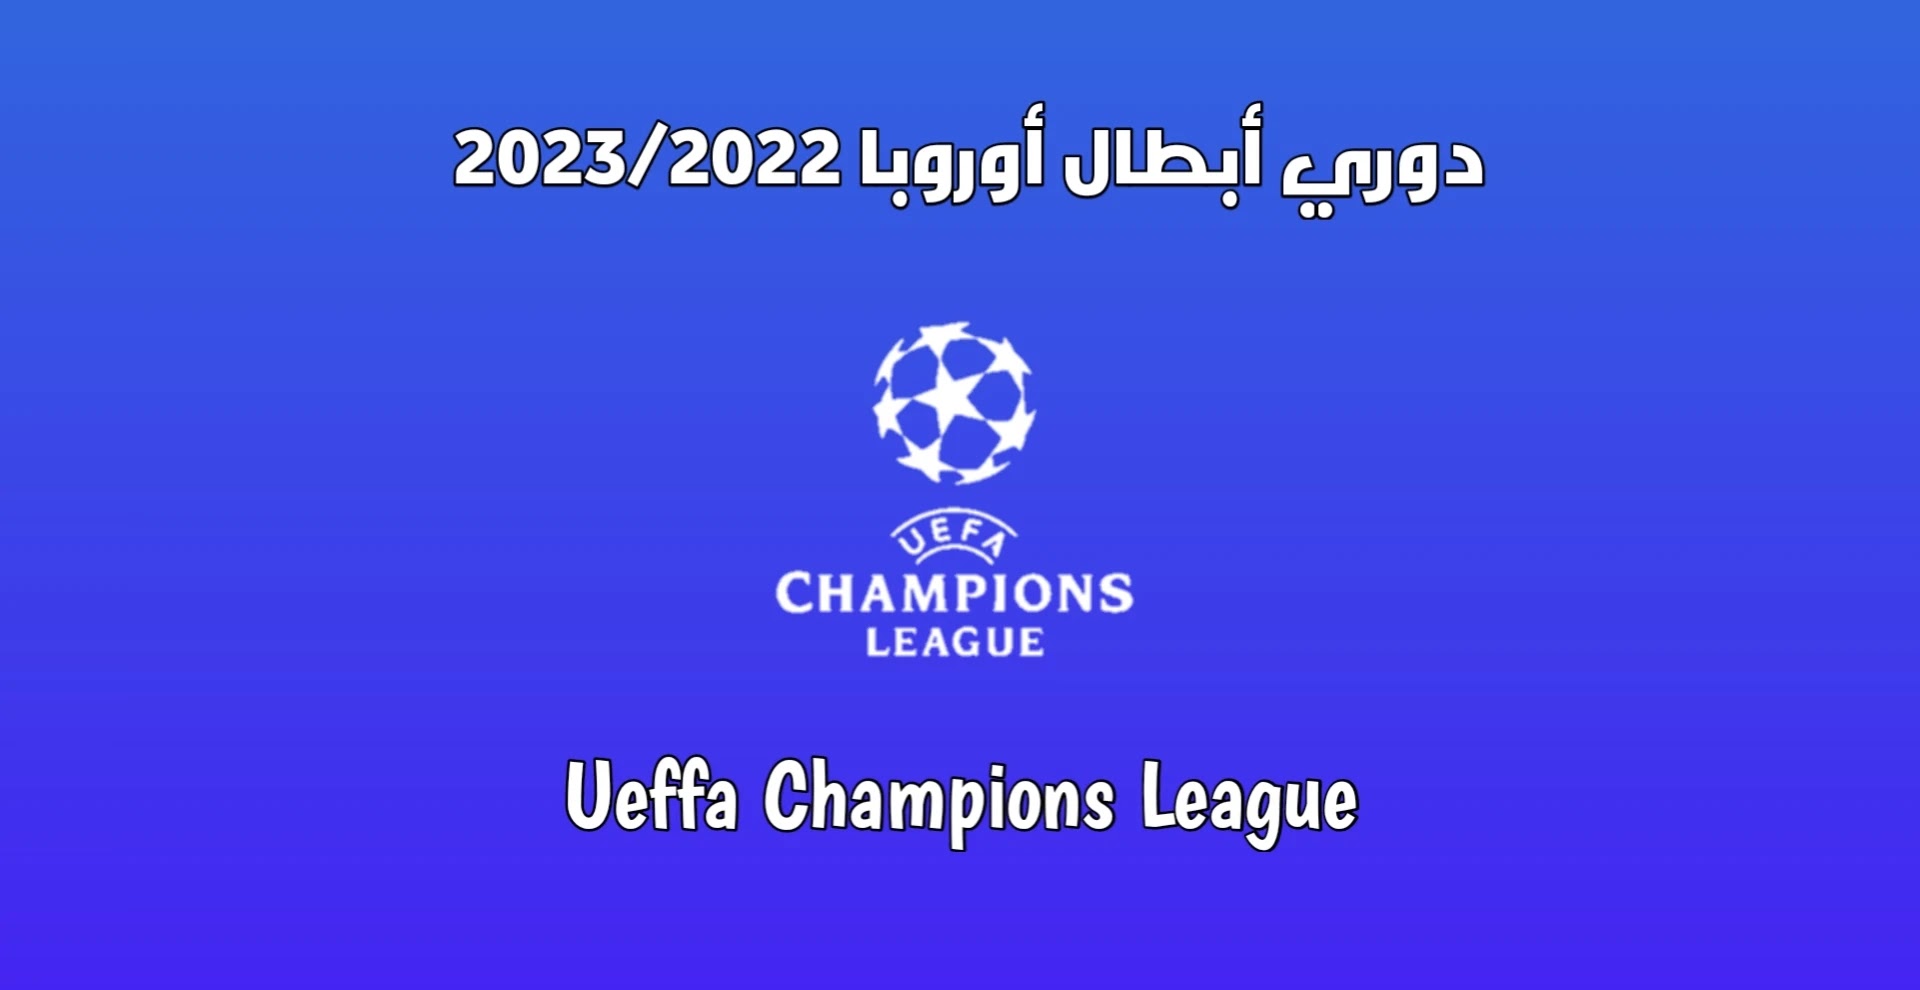 نتائج قرعة دوري أبطال أوروبا 2023/2022